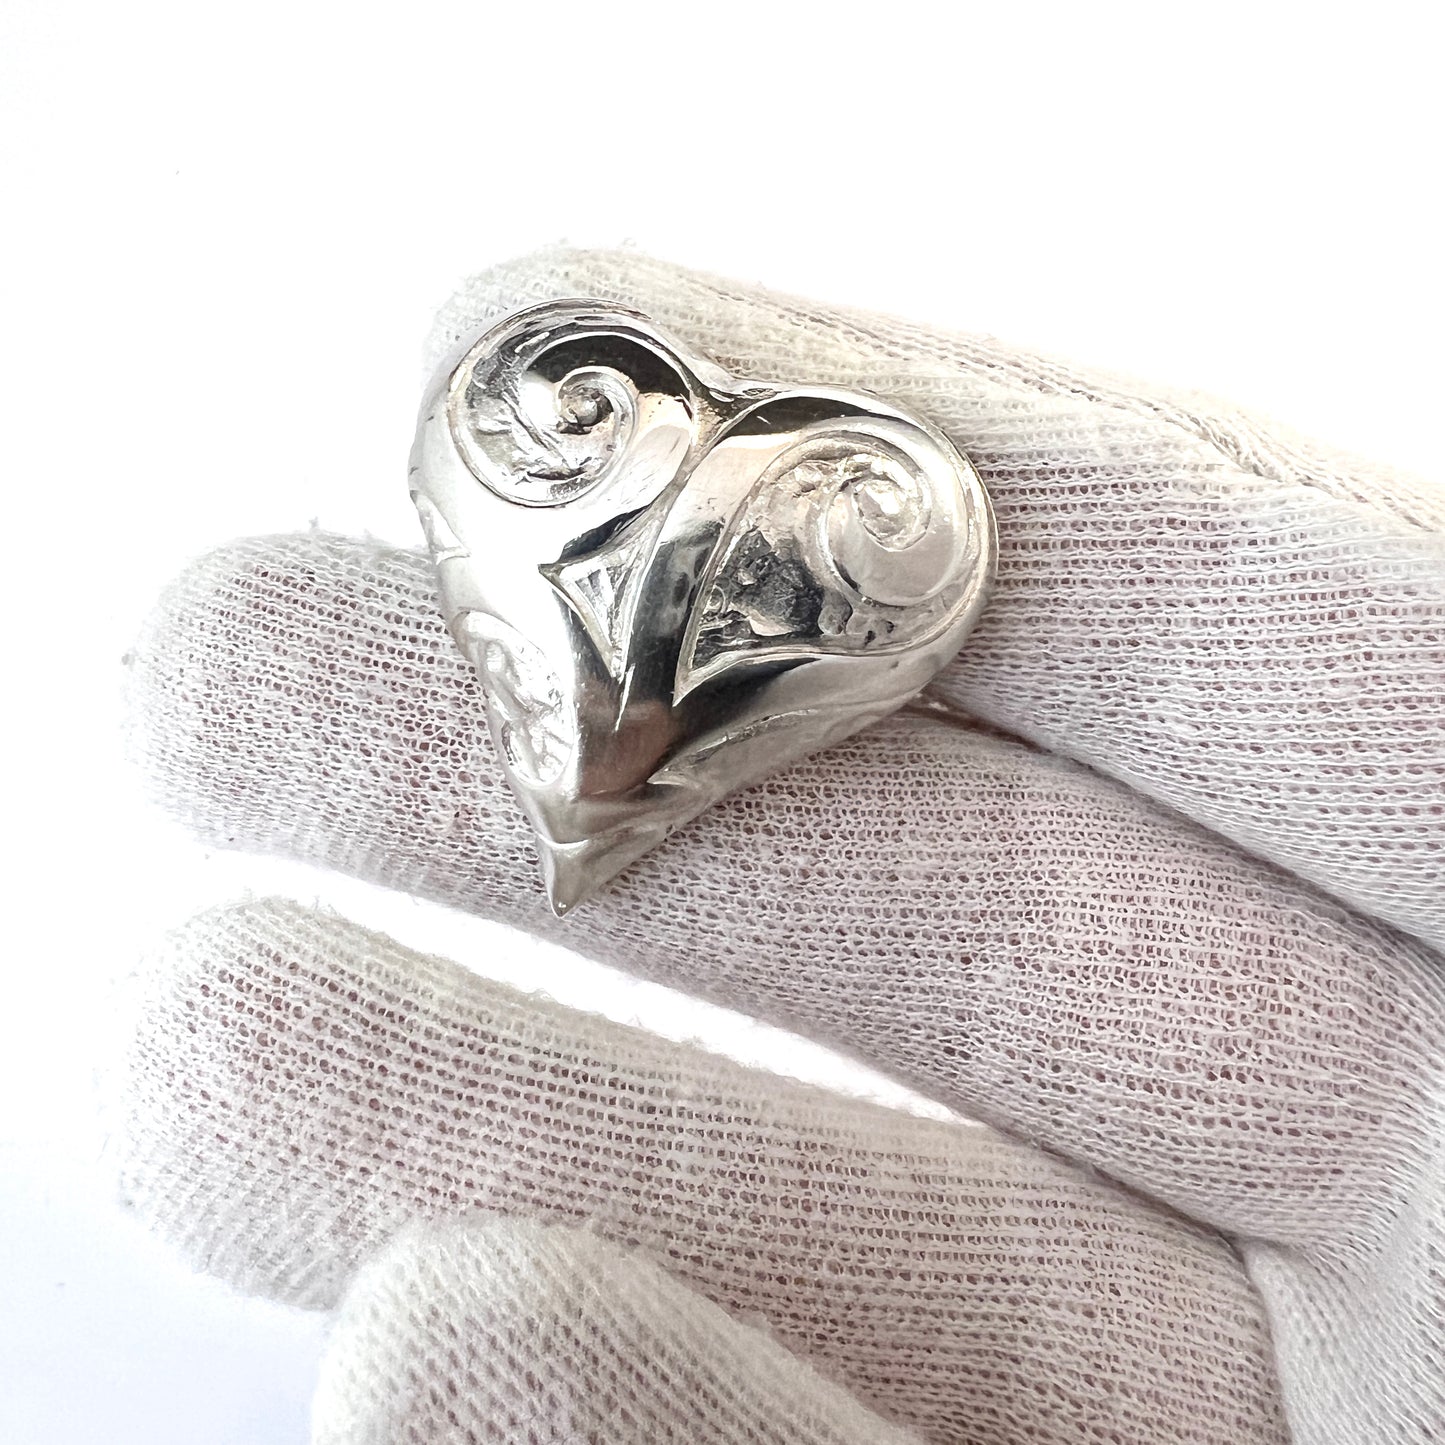 Huge Vintage Sterling Silver Heart Love Ring.